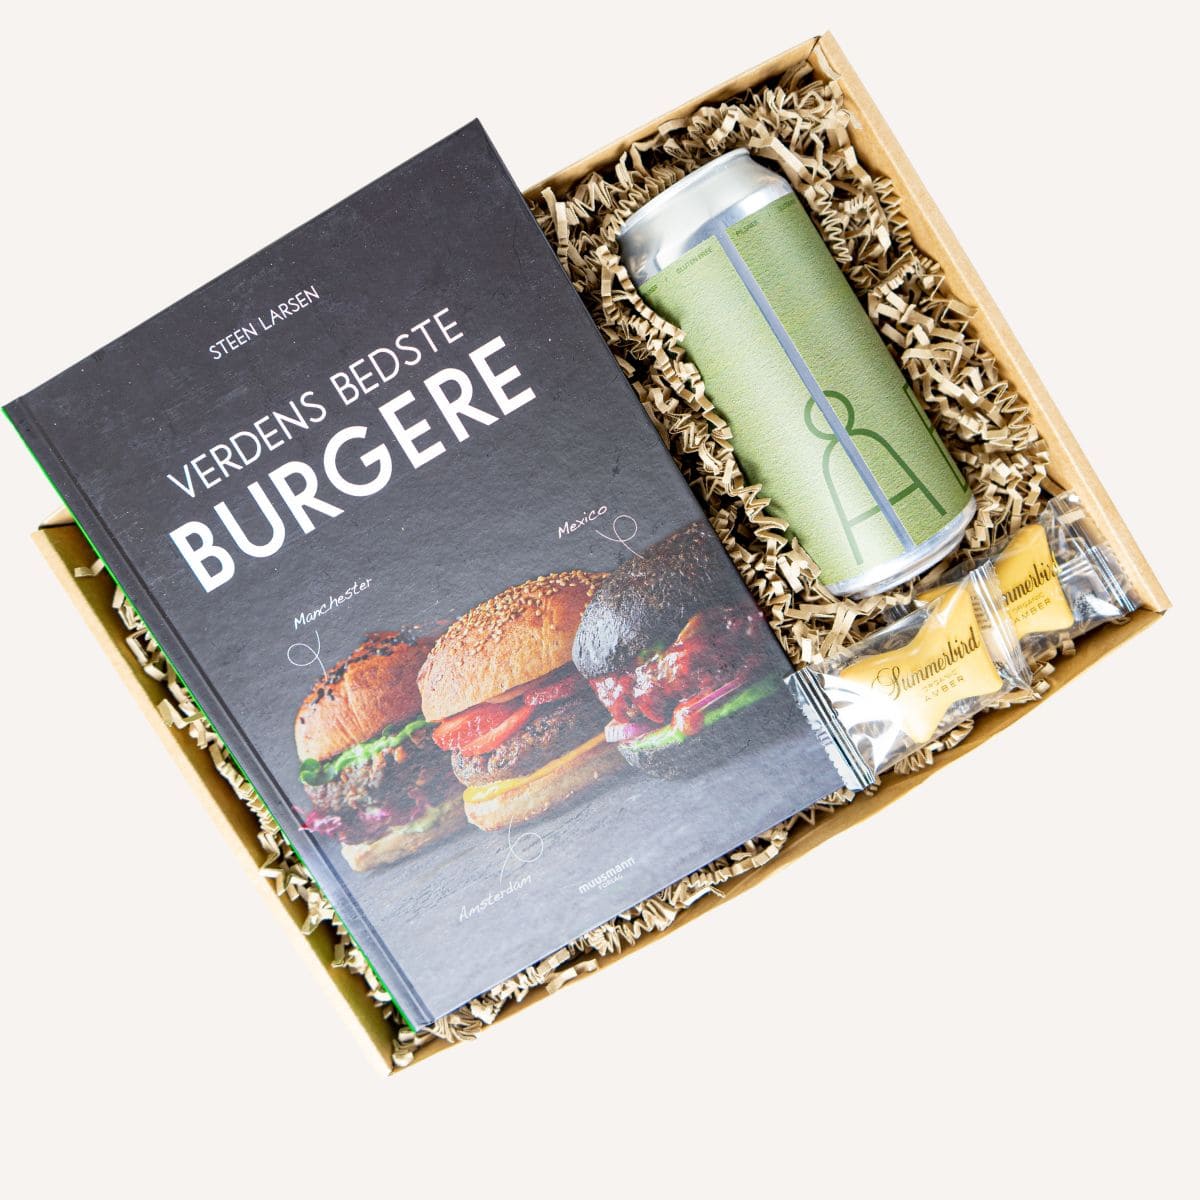 Brug Fars dags gave | Burger & Øl til en forbedret oplevelse